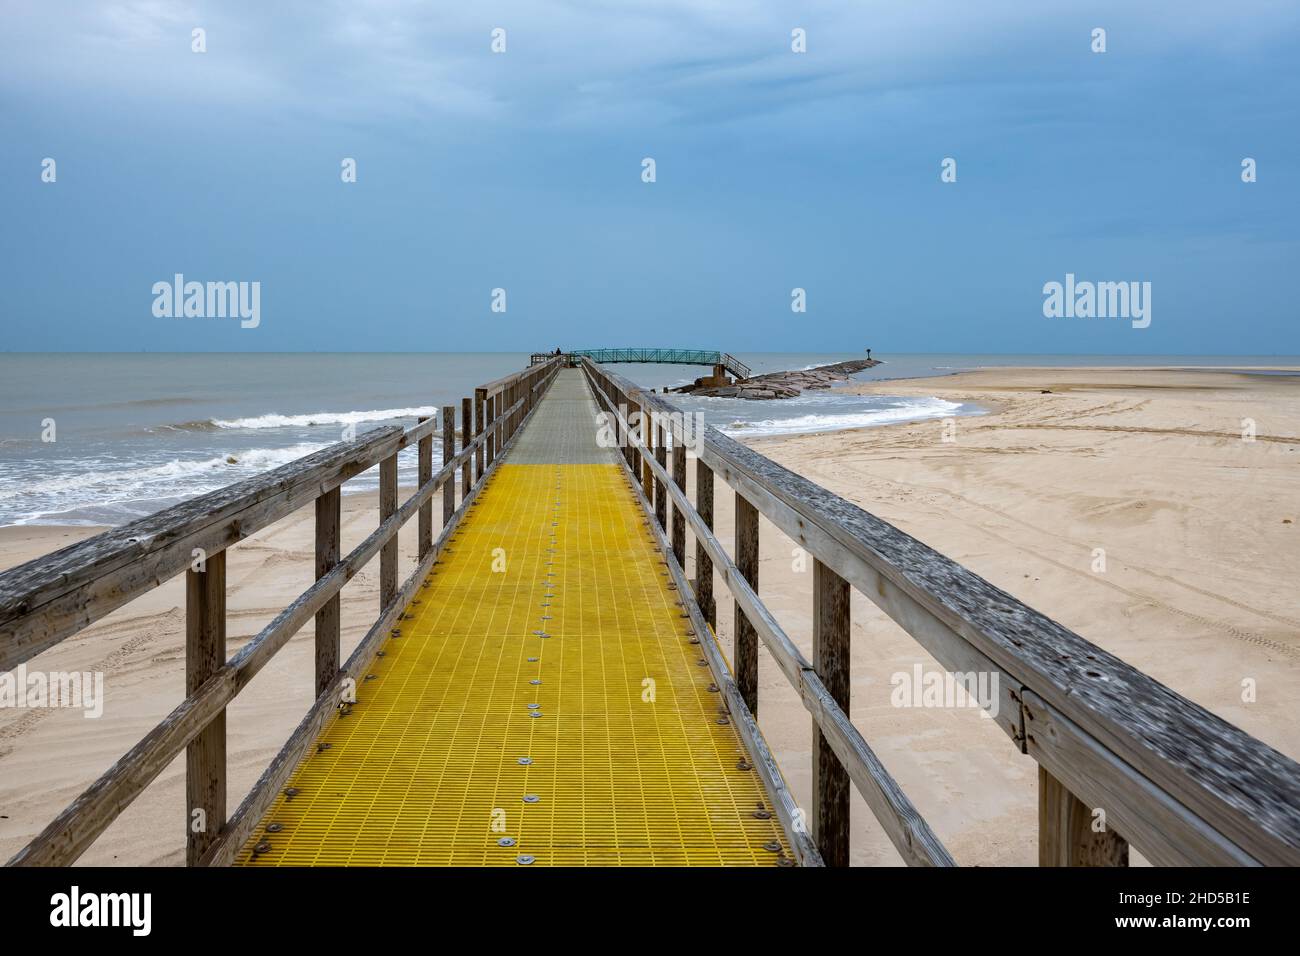 A board walk on the beach near Matagorda bay, Texas, USA. Stock Photo